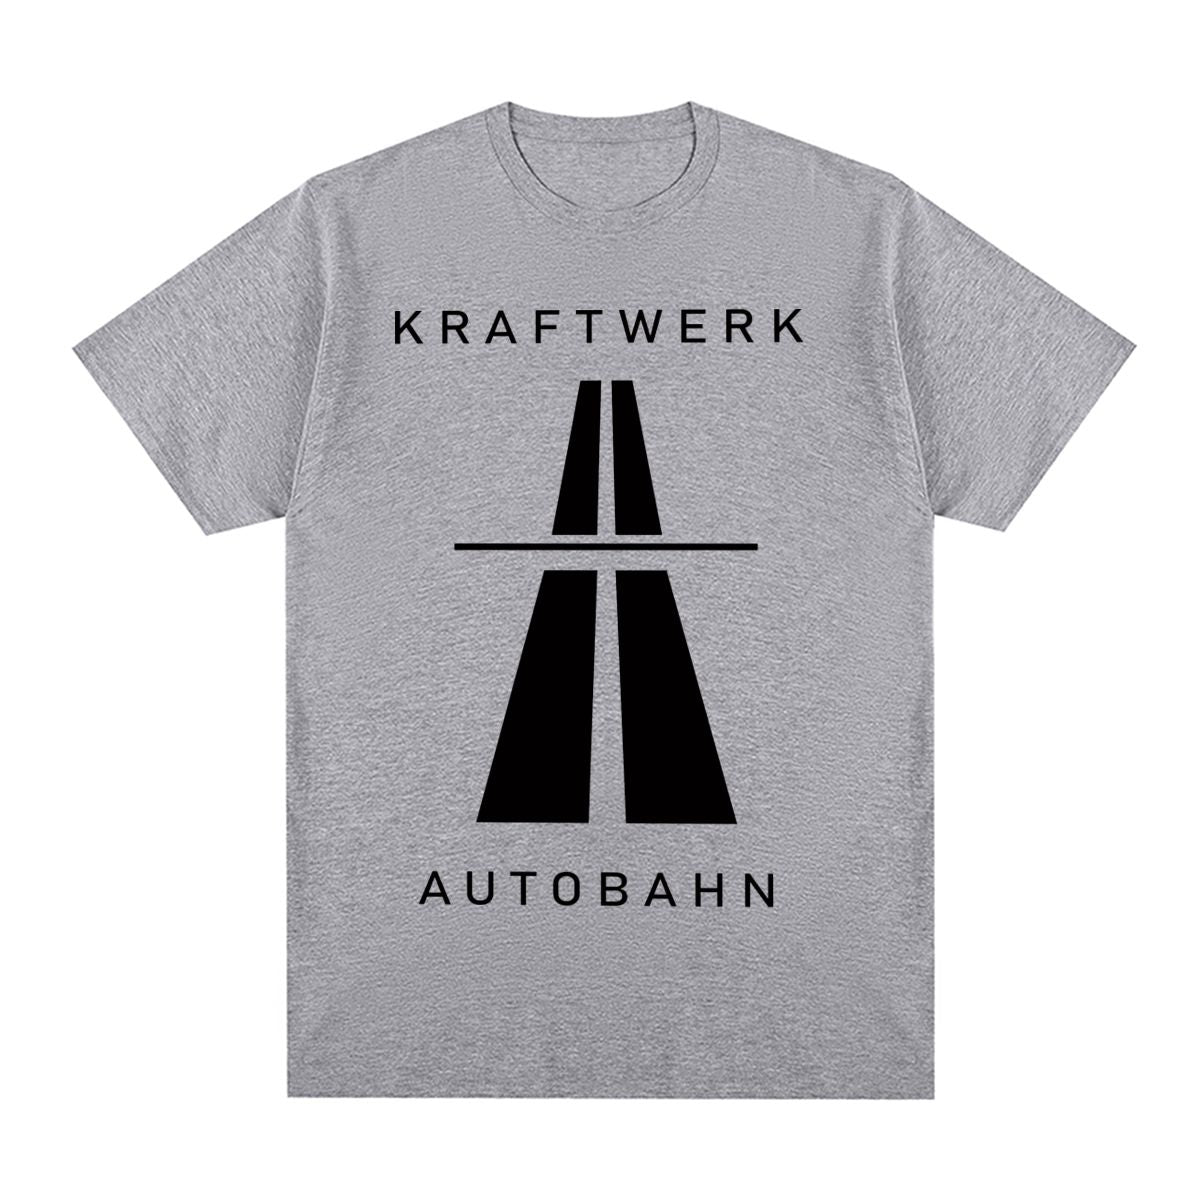 Kraftwerk Autobahn Vintage Music T-Shirt Other - Sound Shirts